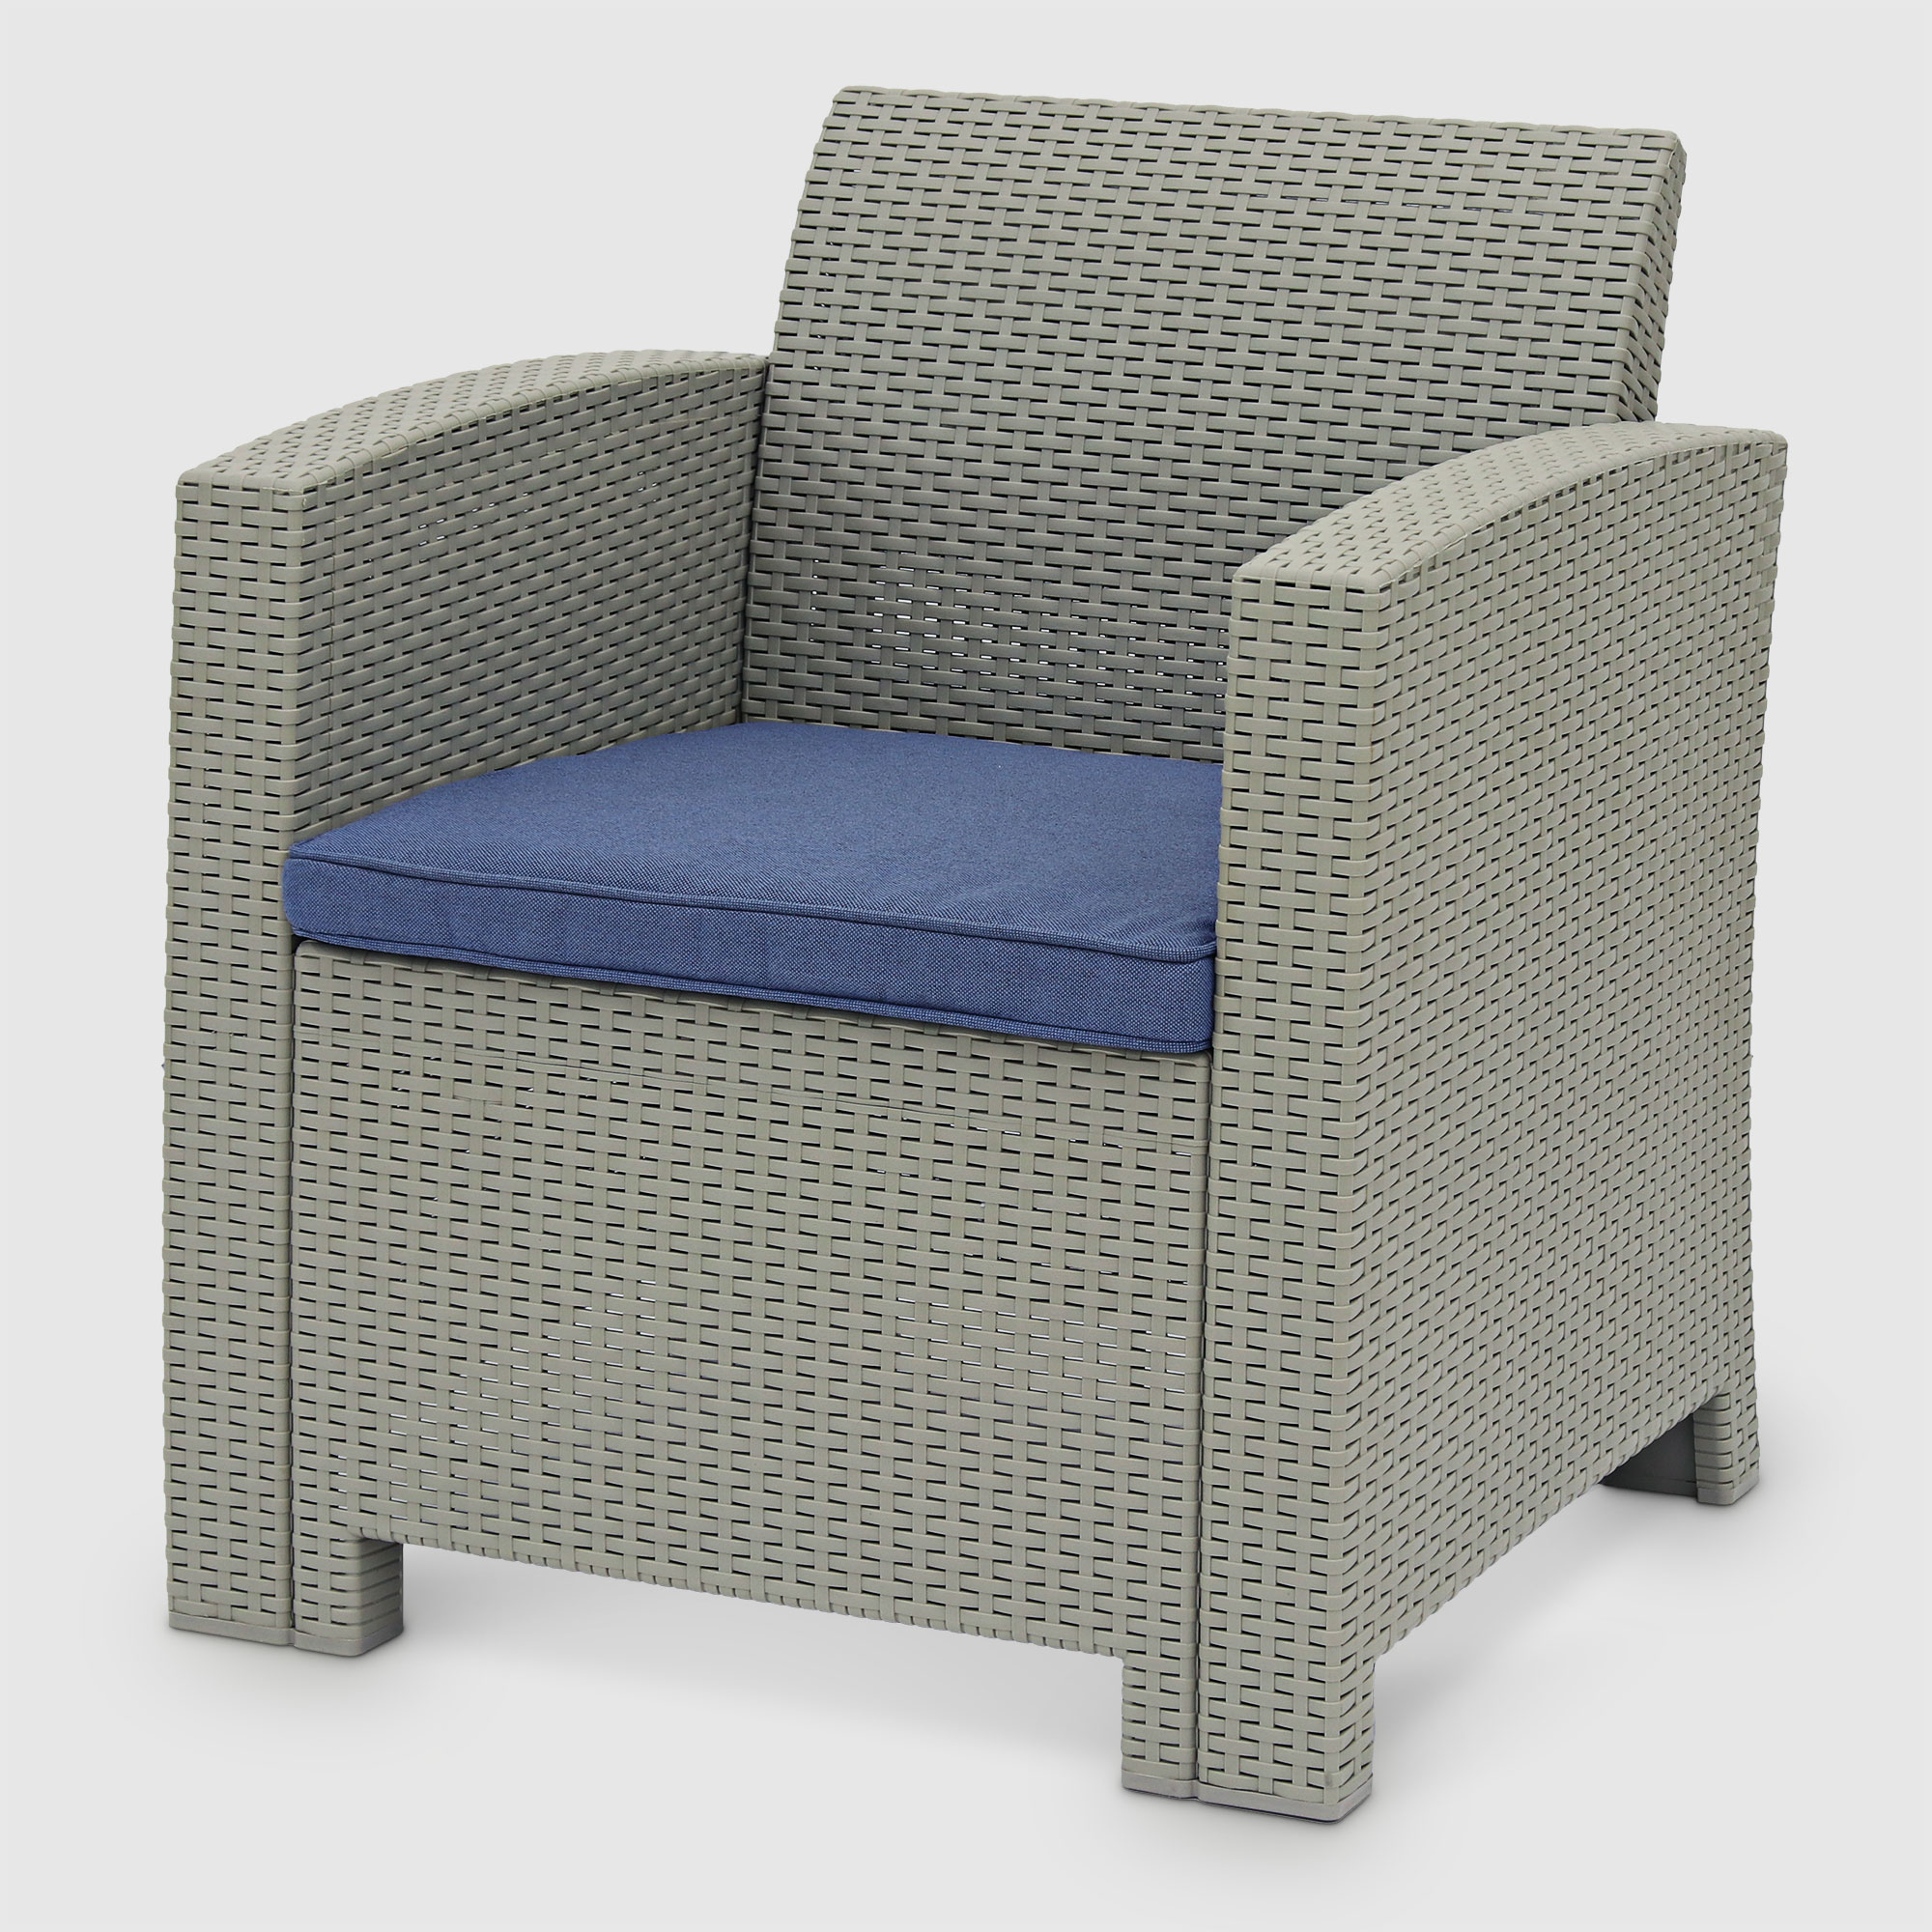 Комплект садовой мебели LF серый с синим из 4 пердметов, цвет синий, размер 172х61х76 - фото 6